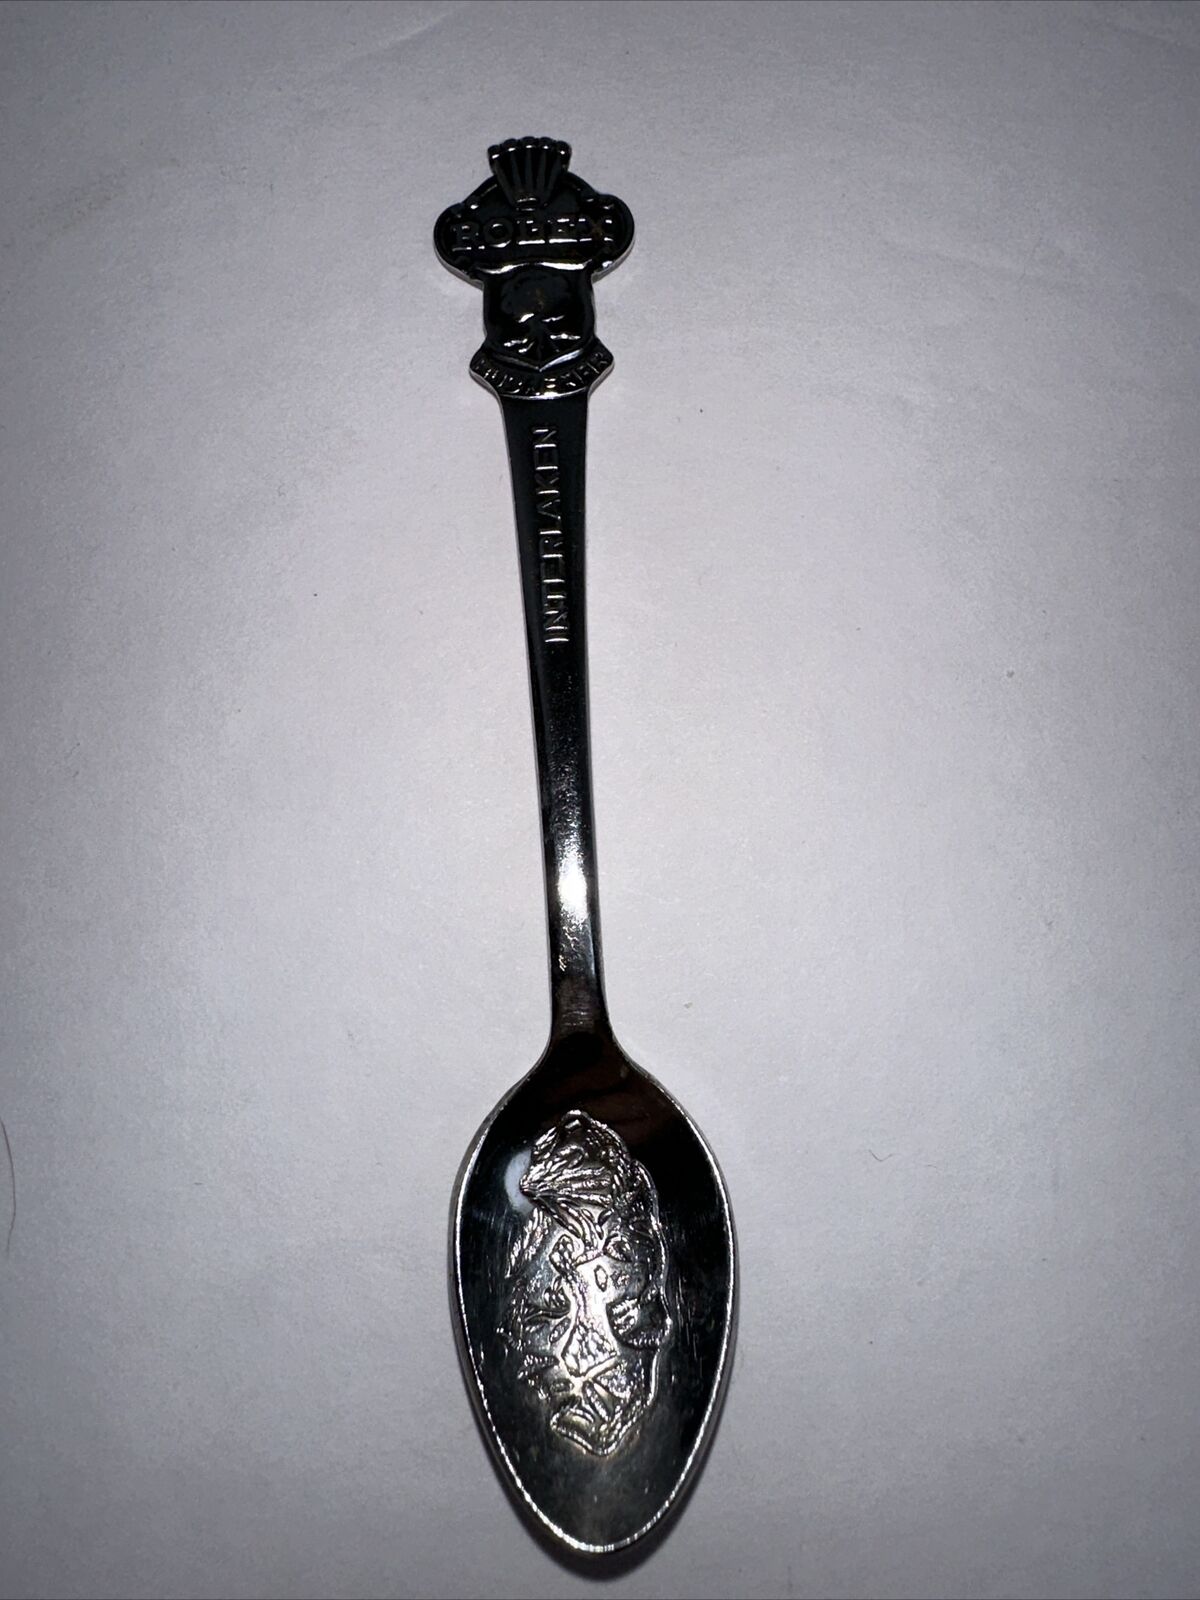 Interlaken Rolex Bucherer Watches CB 6.9 Vintage Souvenir Spoon Collectible